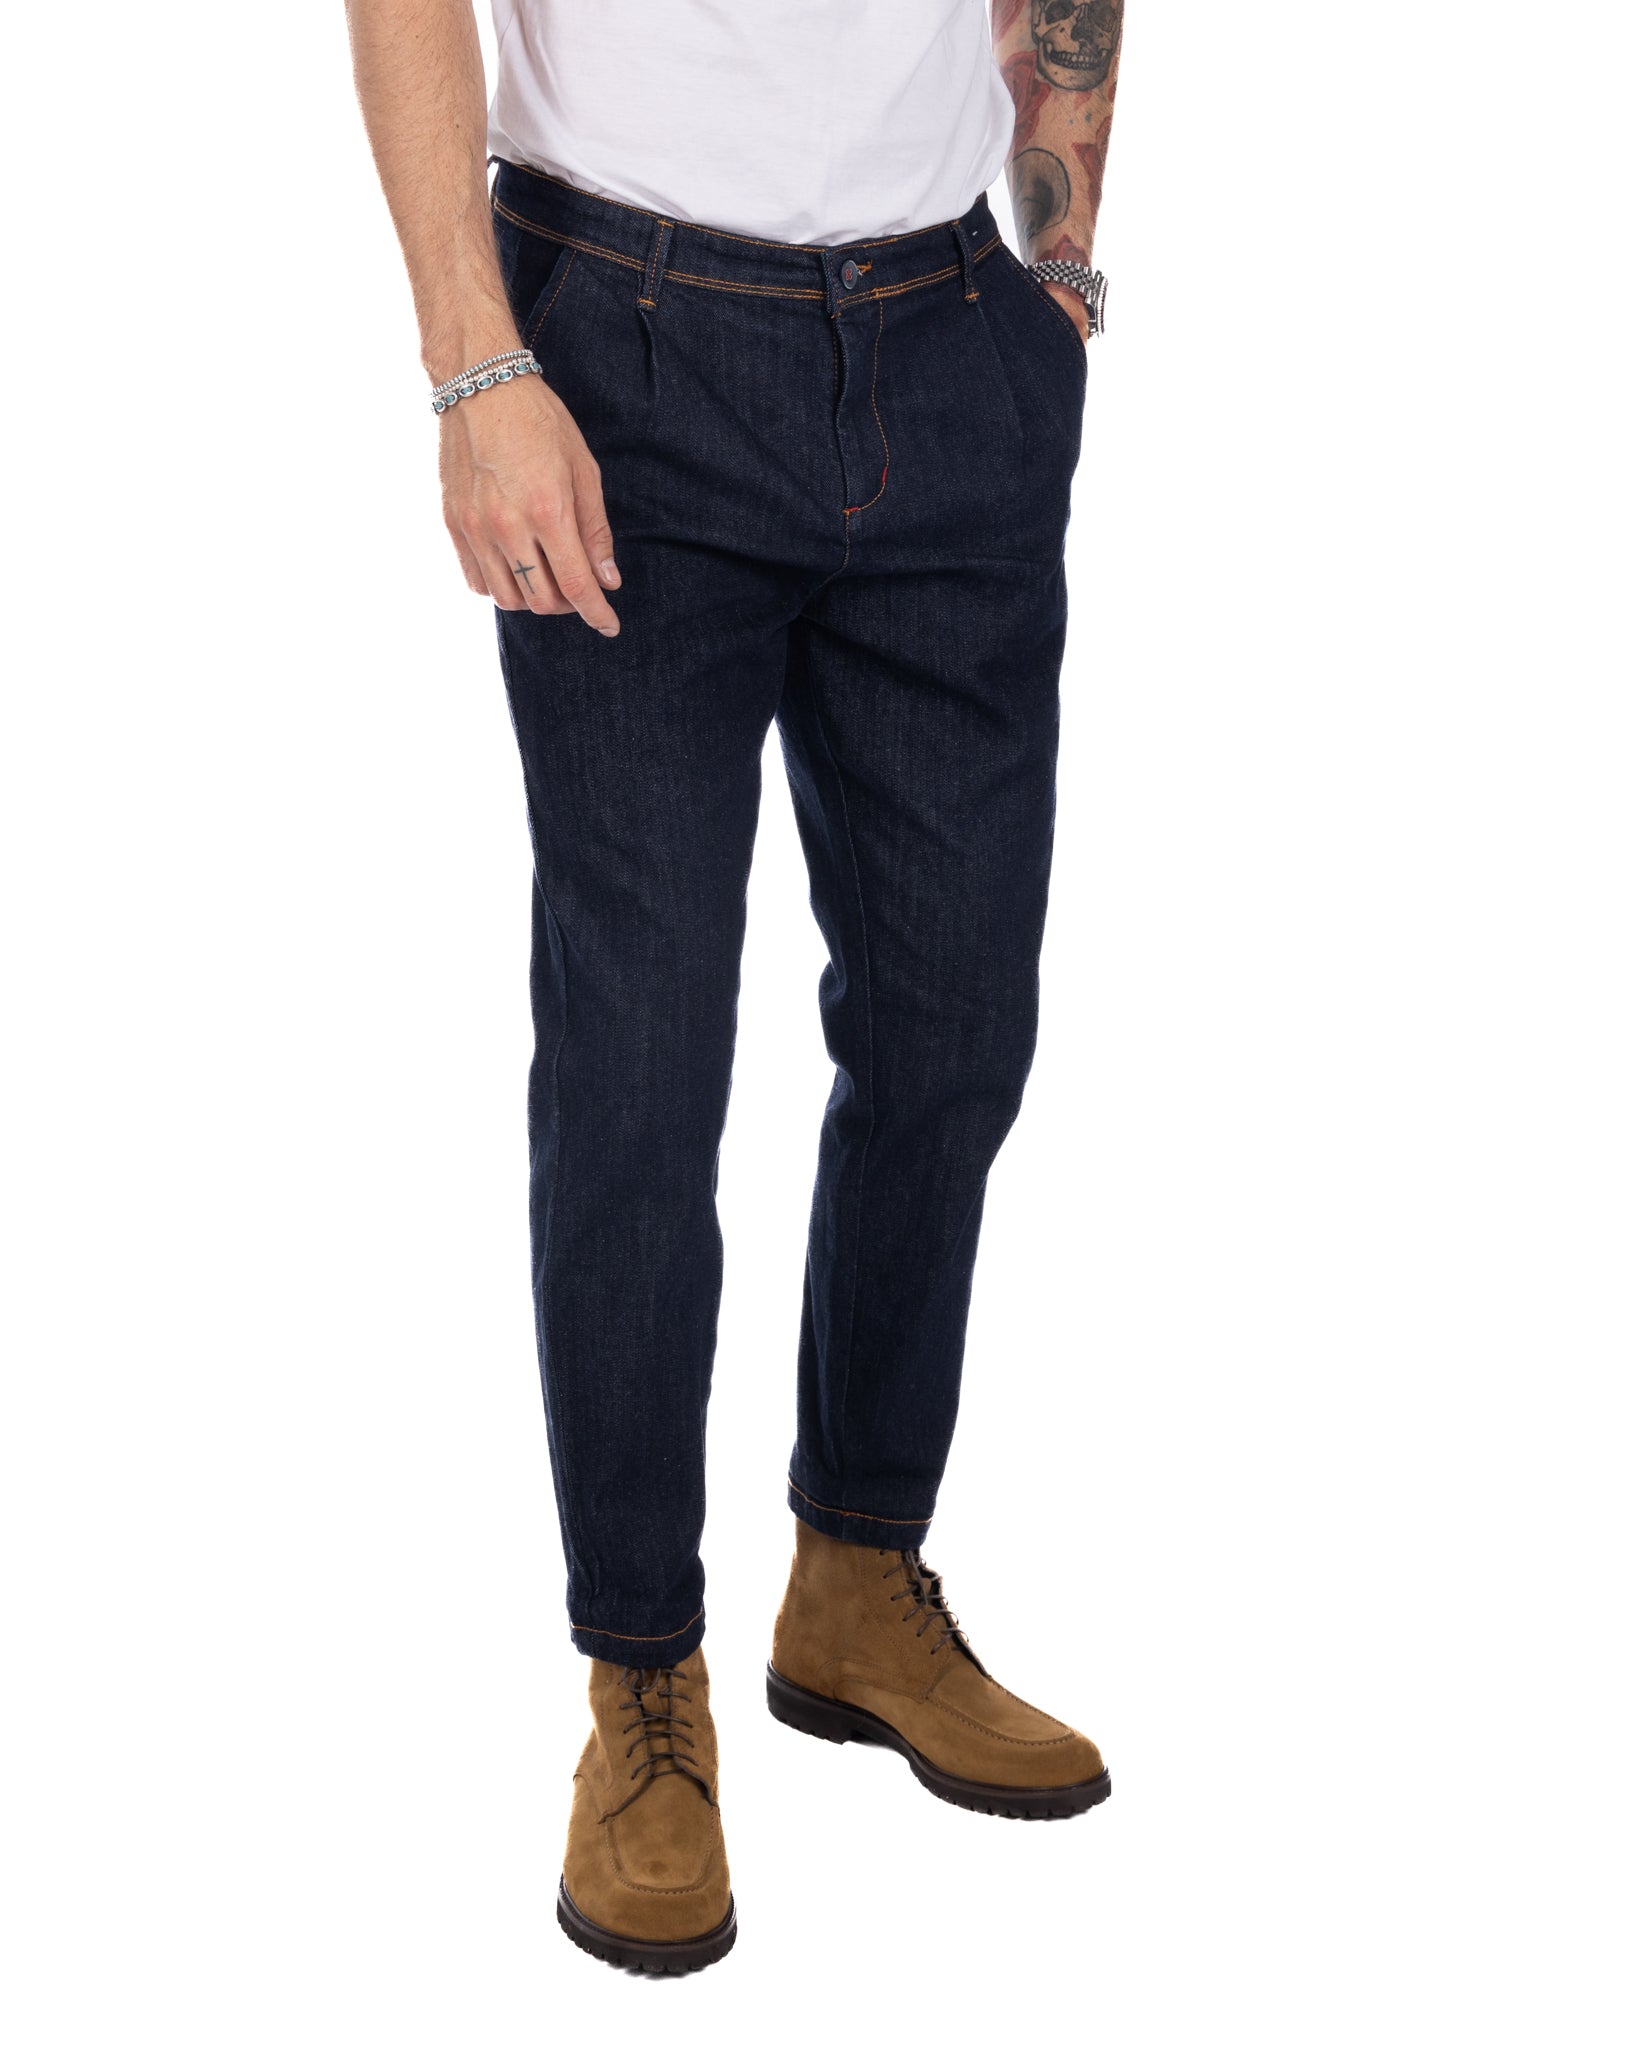 Orleans - jeans tasca america lavaggio zero